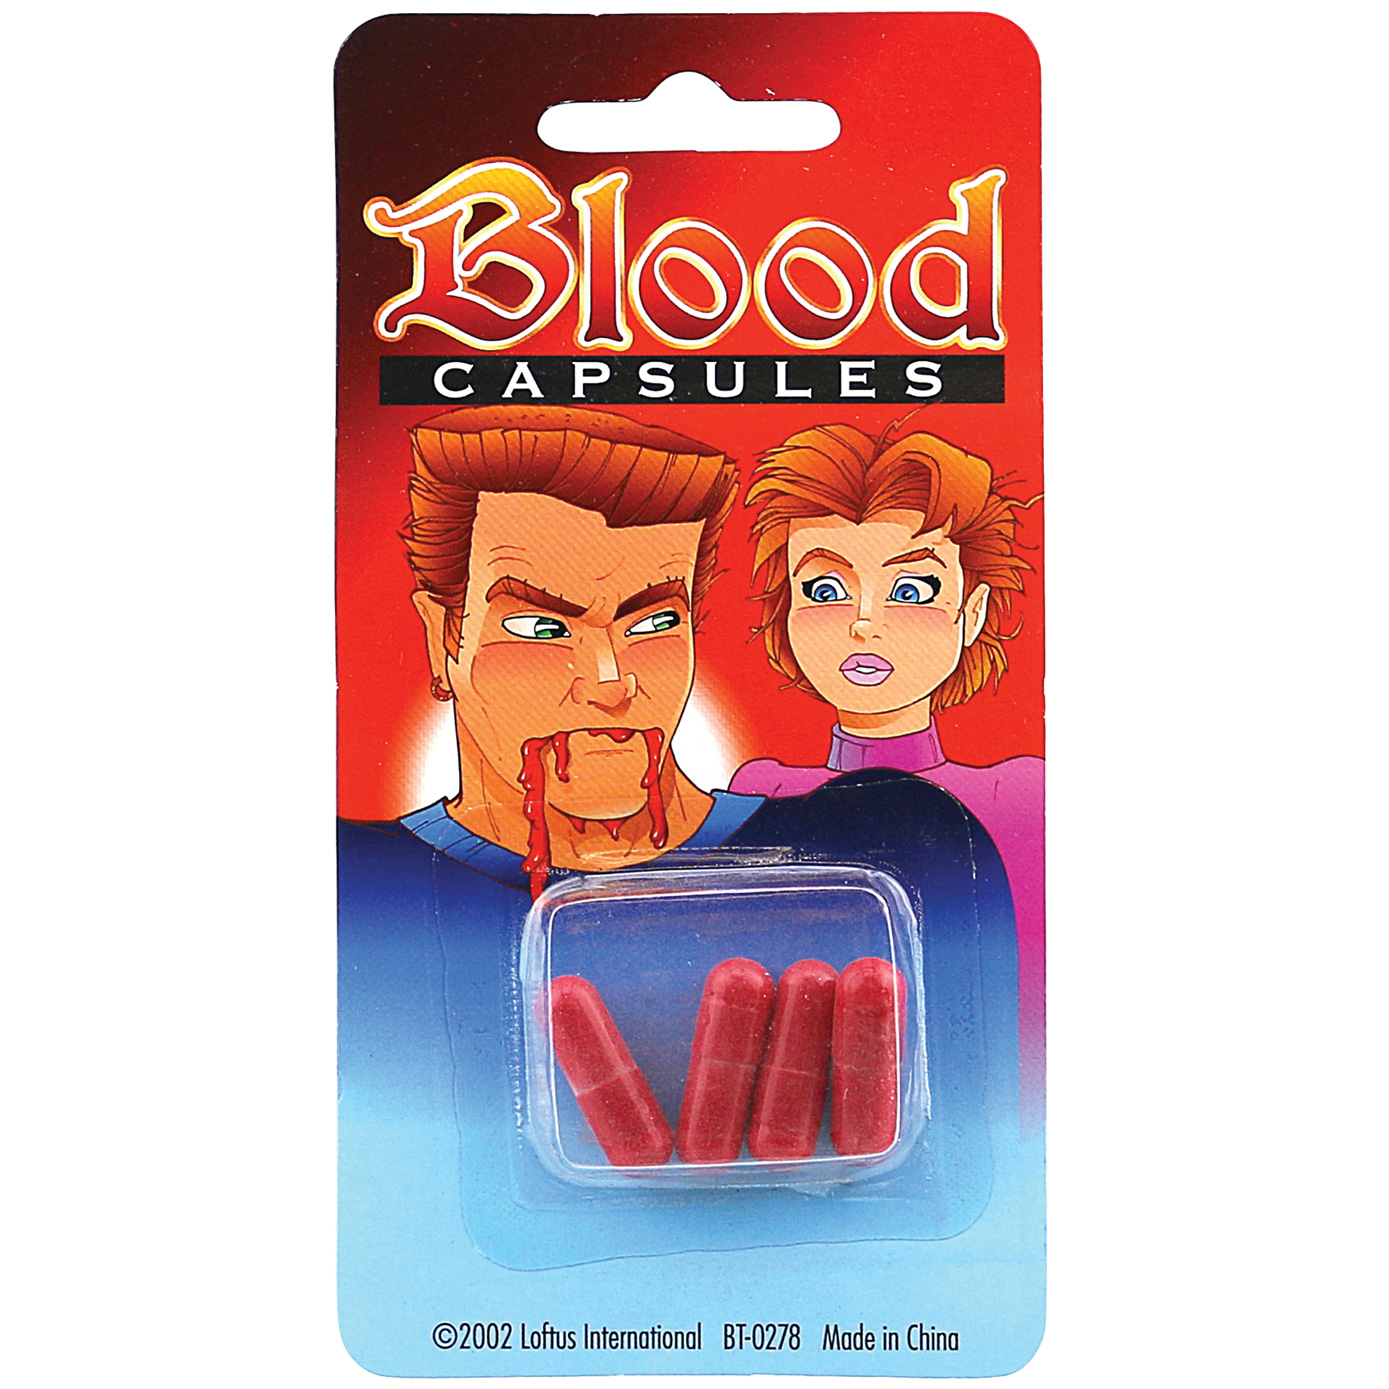 BLOOD CAPSULES